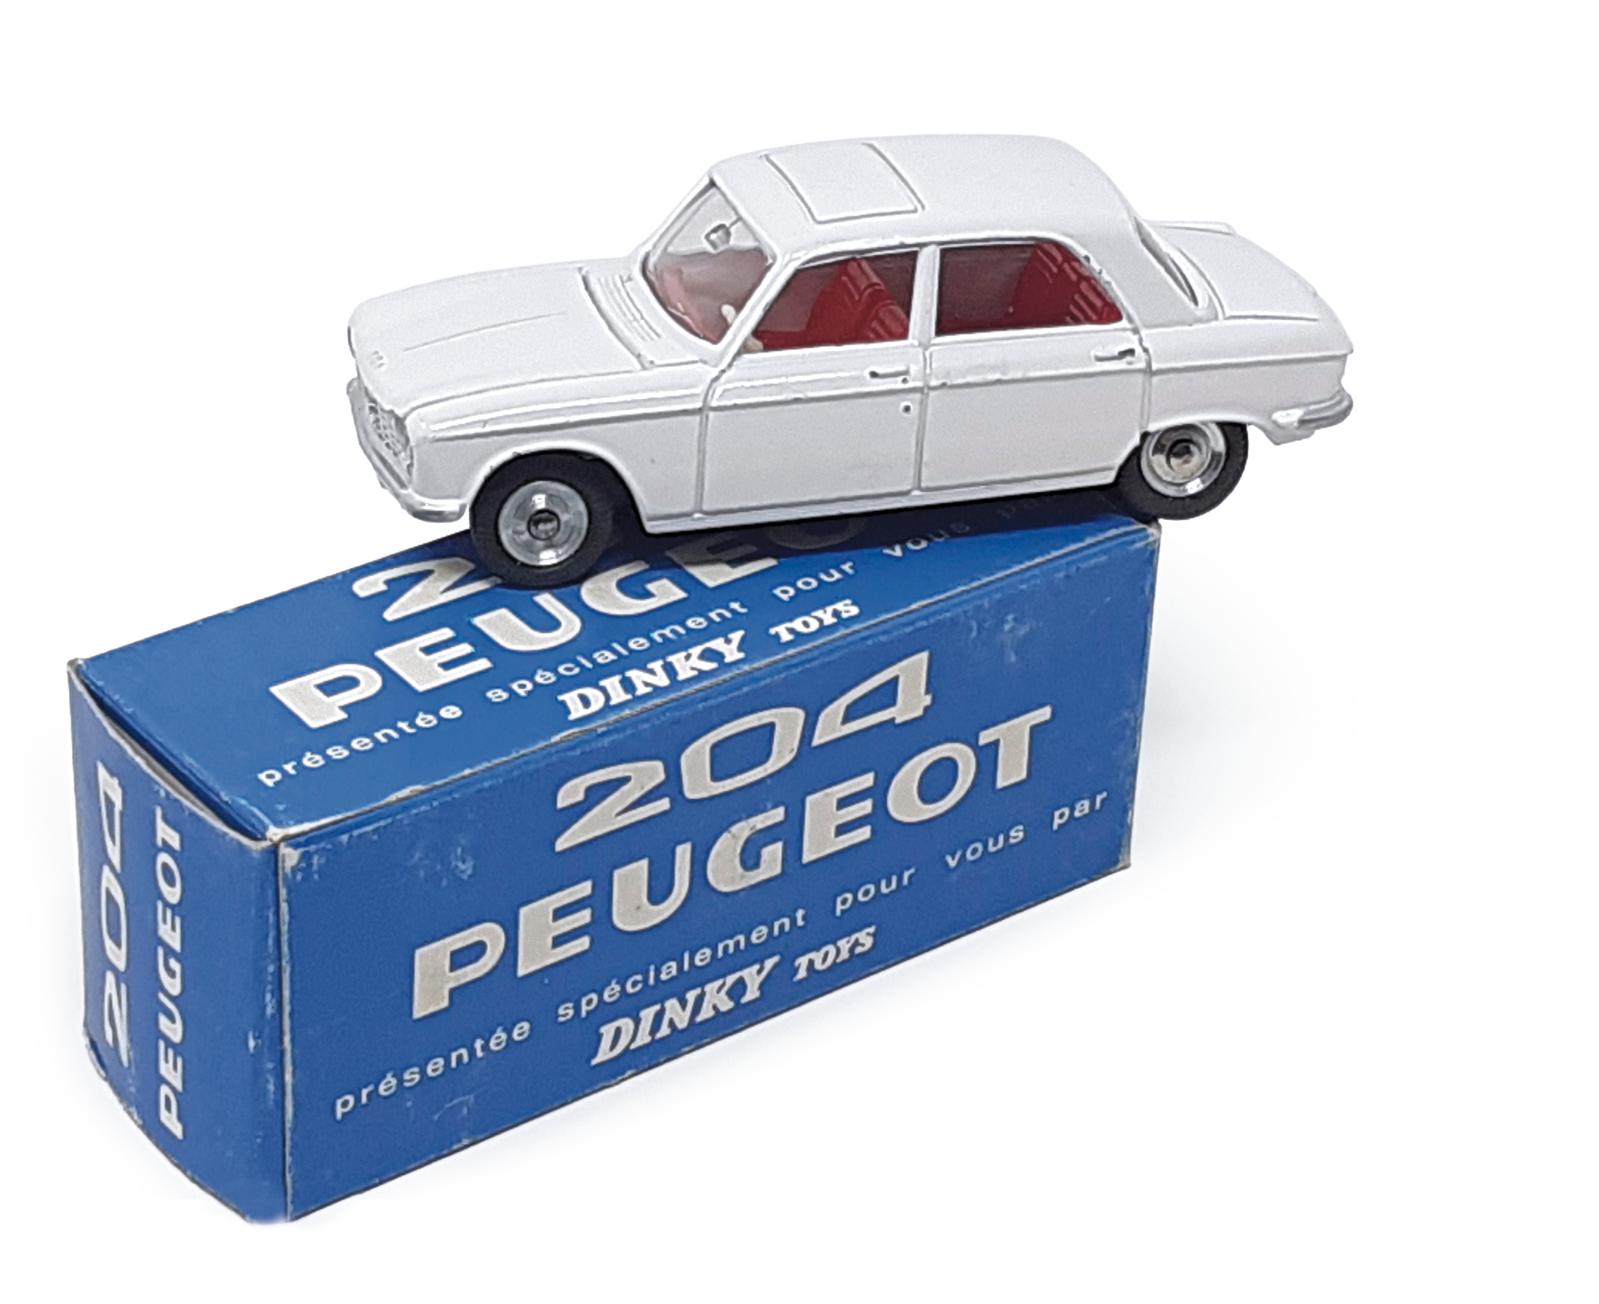 Dinky Toys France, 1965. Peugeot 204 berline, 1/43, réf. 510, couleur blanc pur, modèle promotionnel livré en avant-première du lancement 